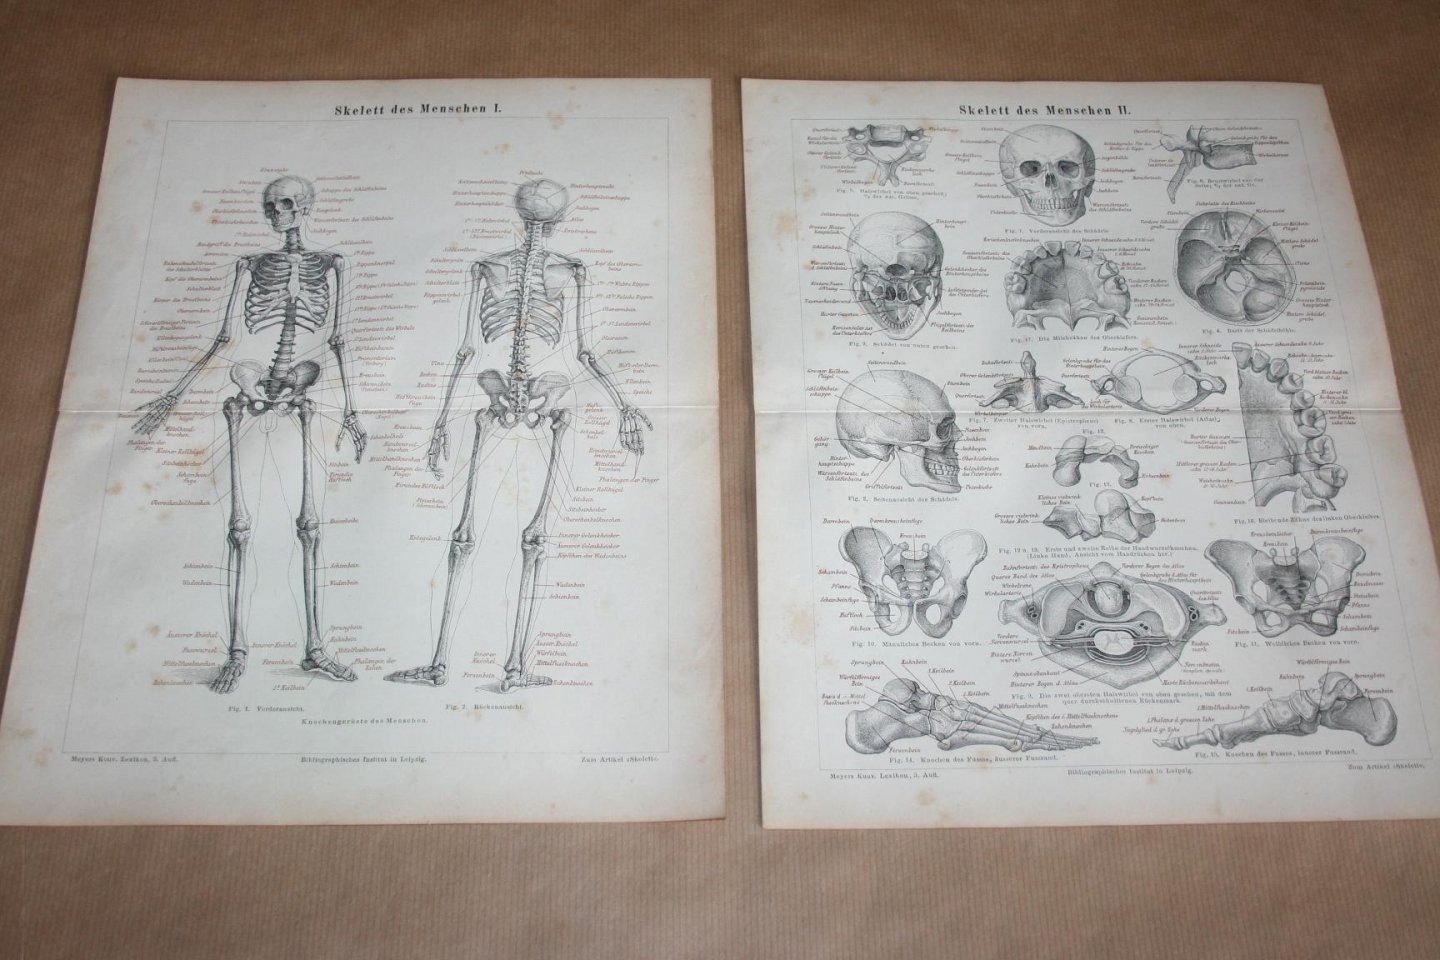  - 2 antieke prenten - Anatomie Skelet / Geraamte van de mens  - Circa 1875